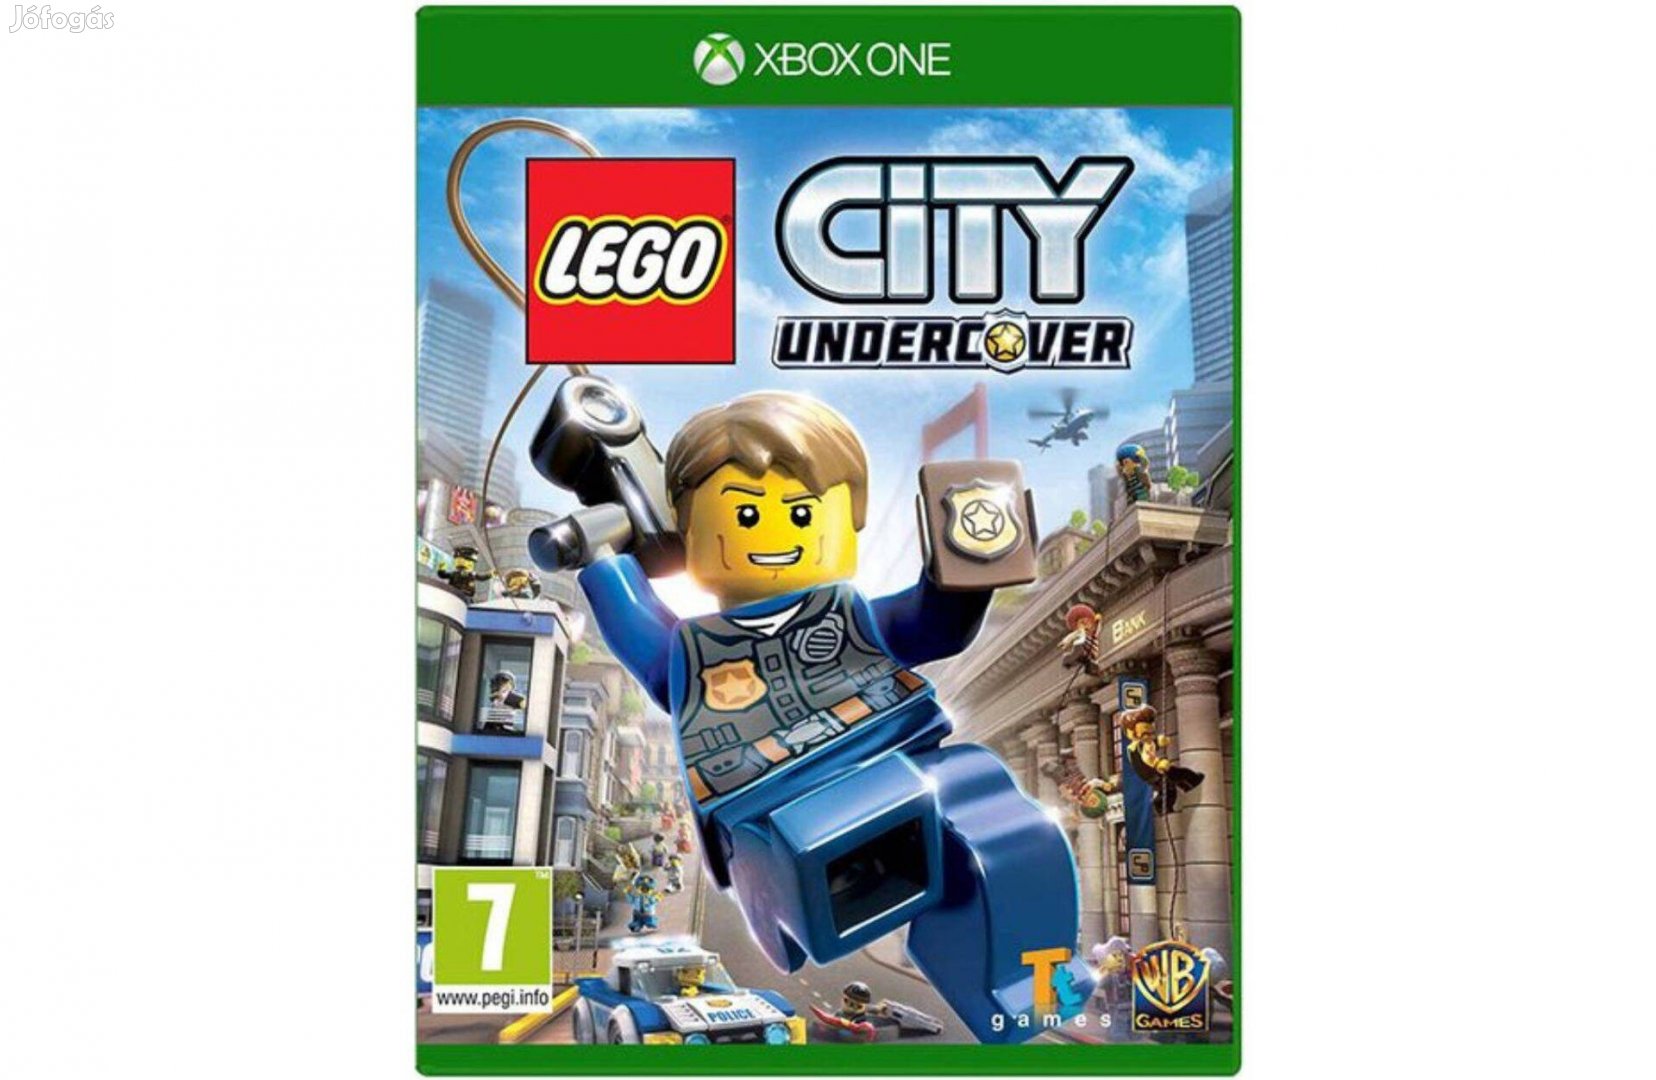 Lego City Undercover - Xbox One játék használt